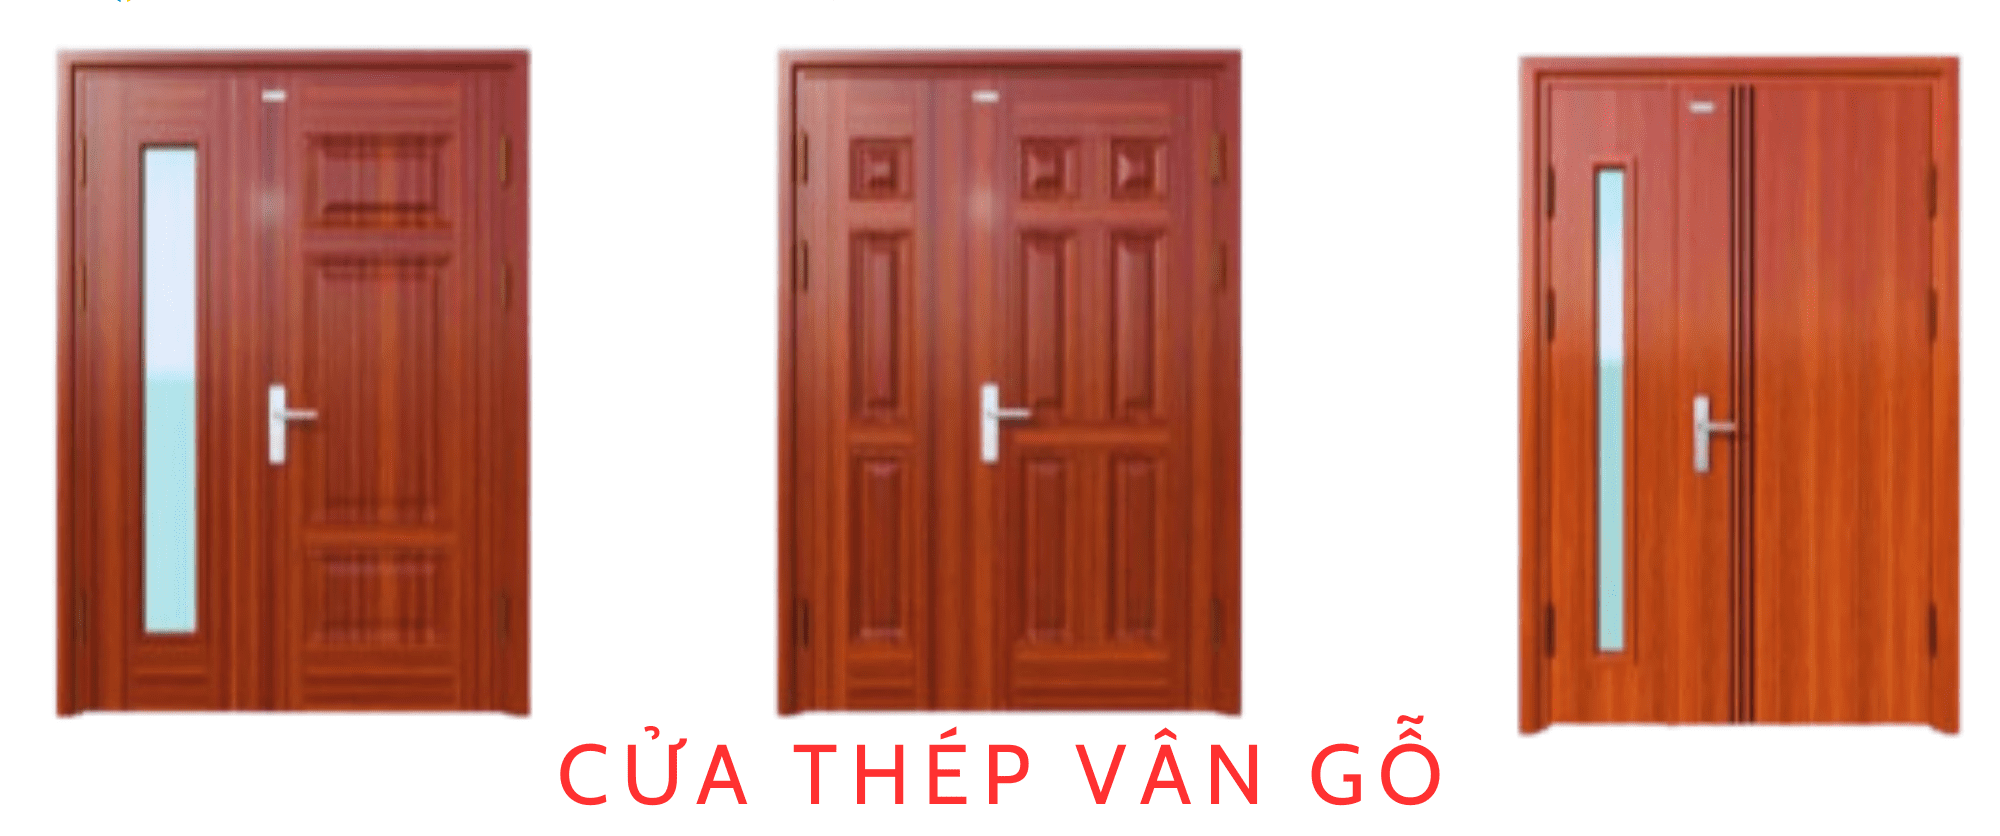 cua-thep-van-go-2-canh